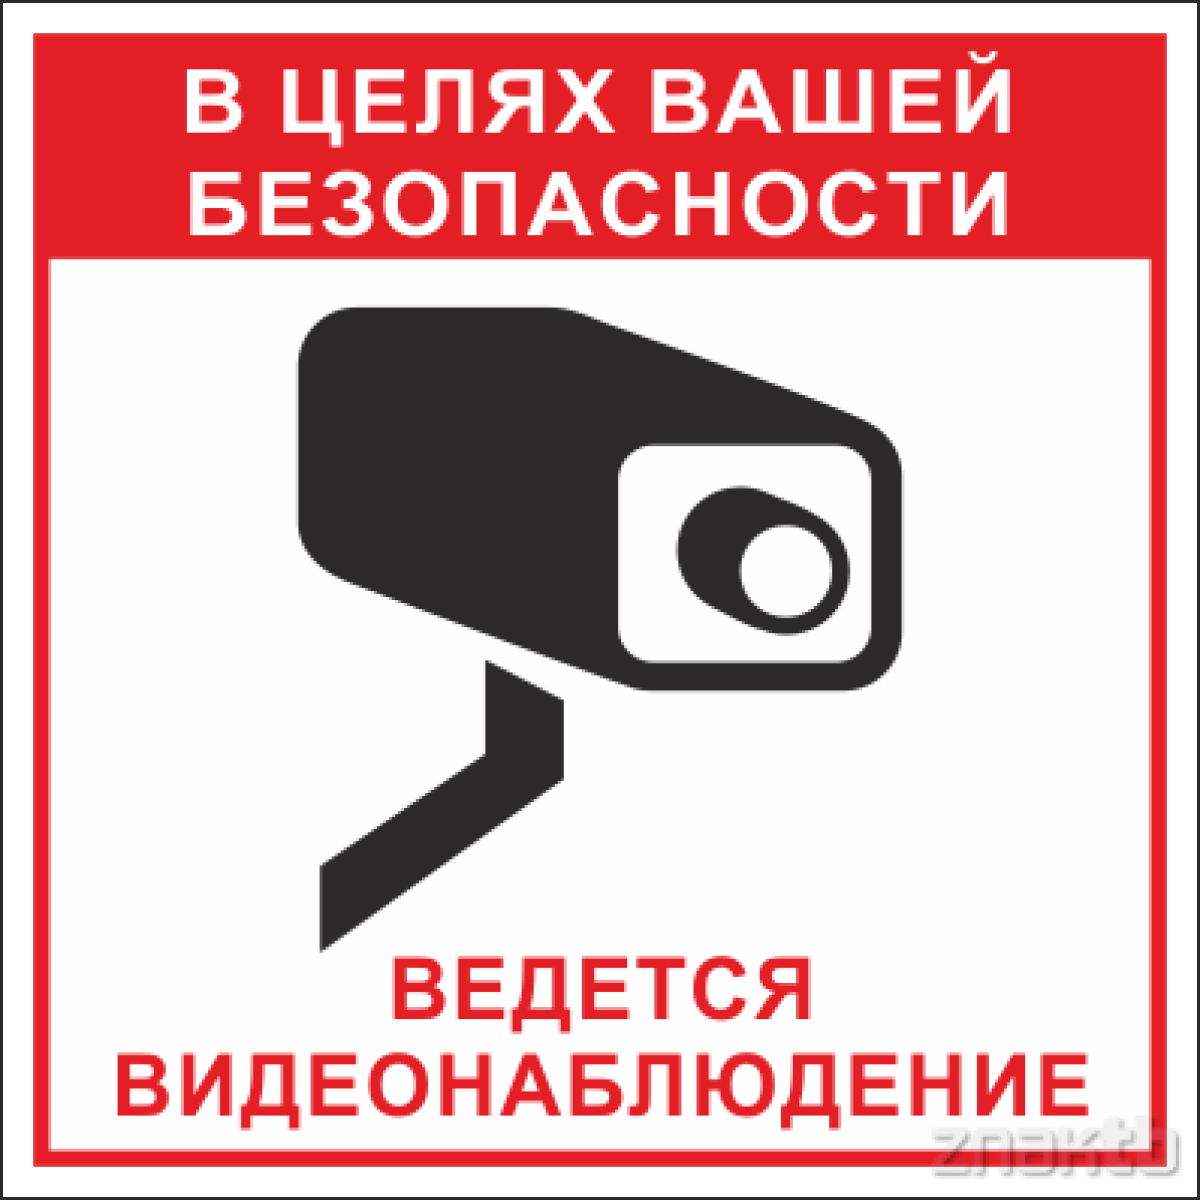 Знак В целях вашей безопасности ведется видеонаблюдение